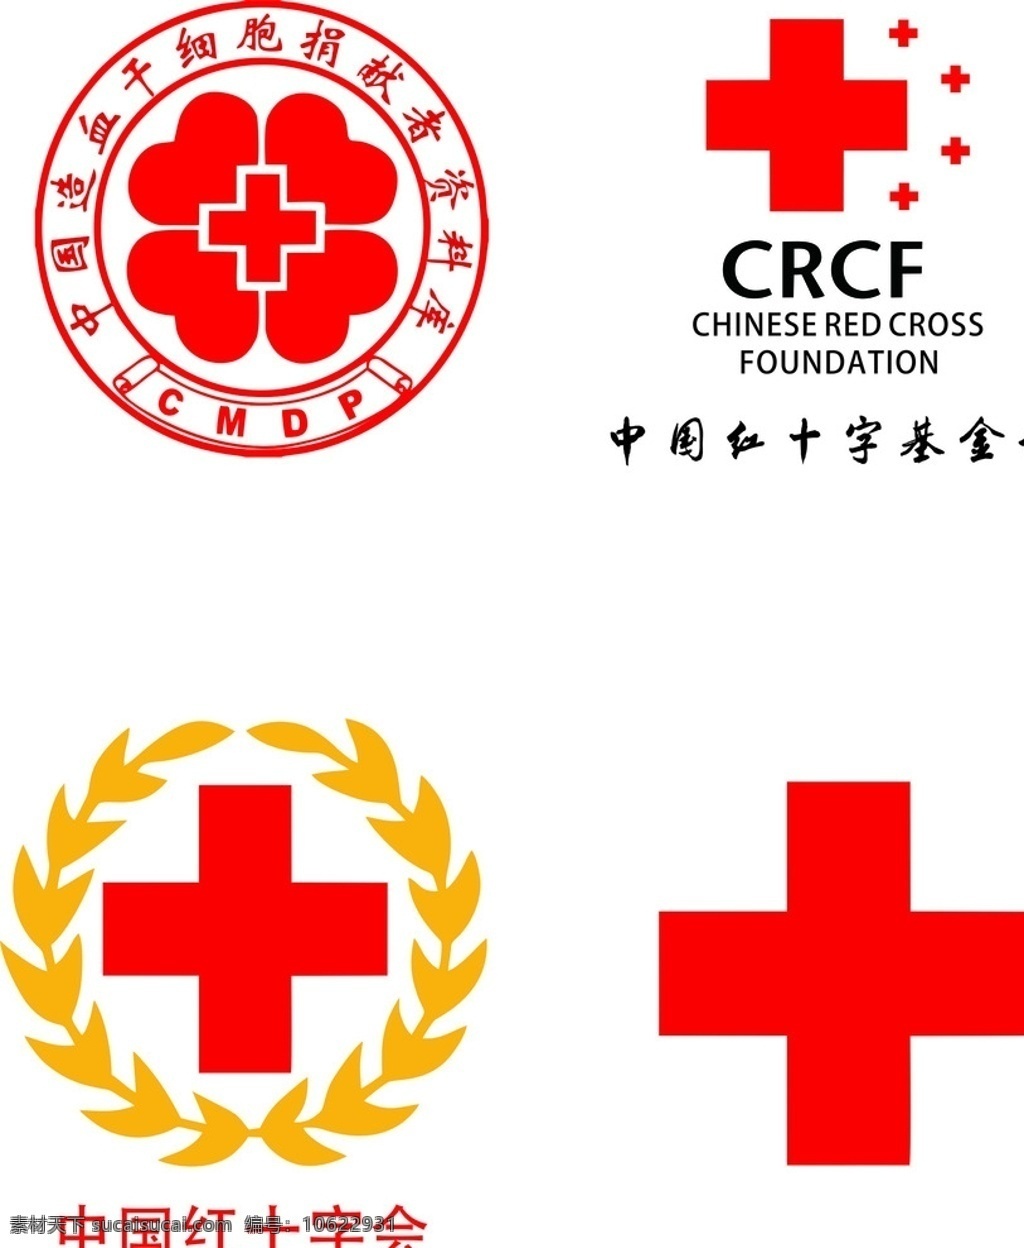 红十字会标志 红十字会 造血干细胞 红十字 红十字基金会 字数够了 攒积分专用 logo设计